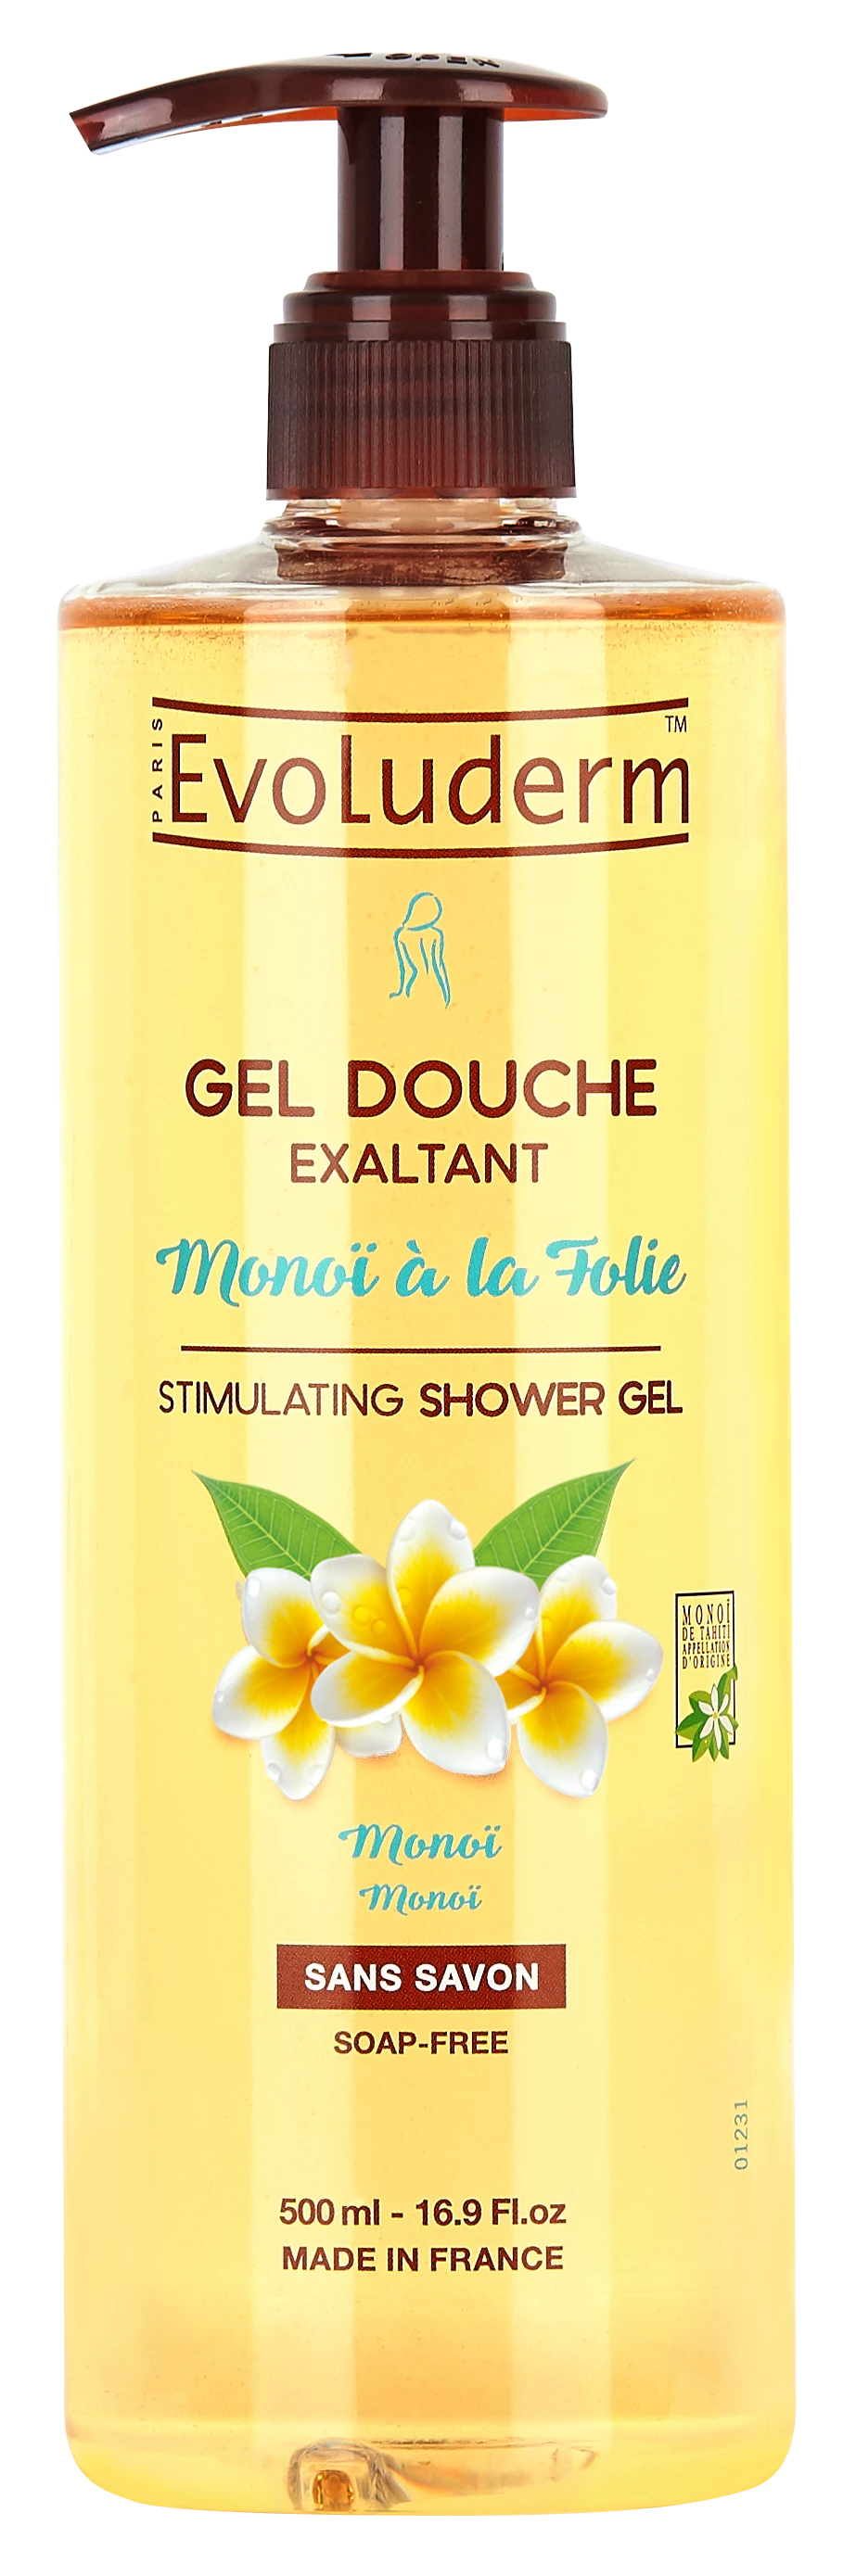 Monoi Shower Gel à la Folie, 500ml - EVOLUDERM